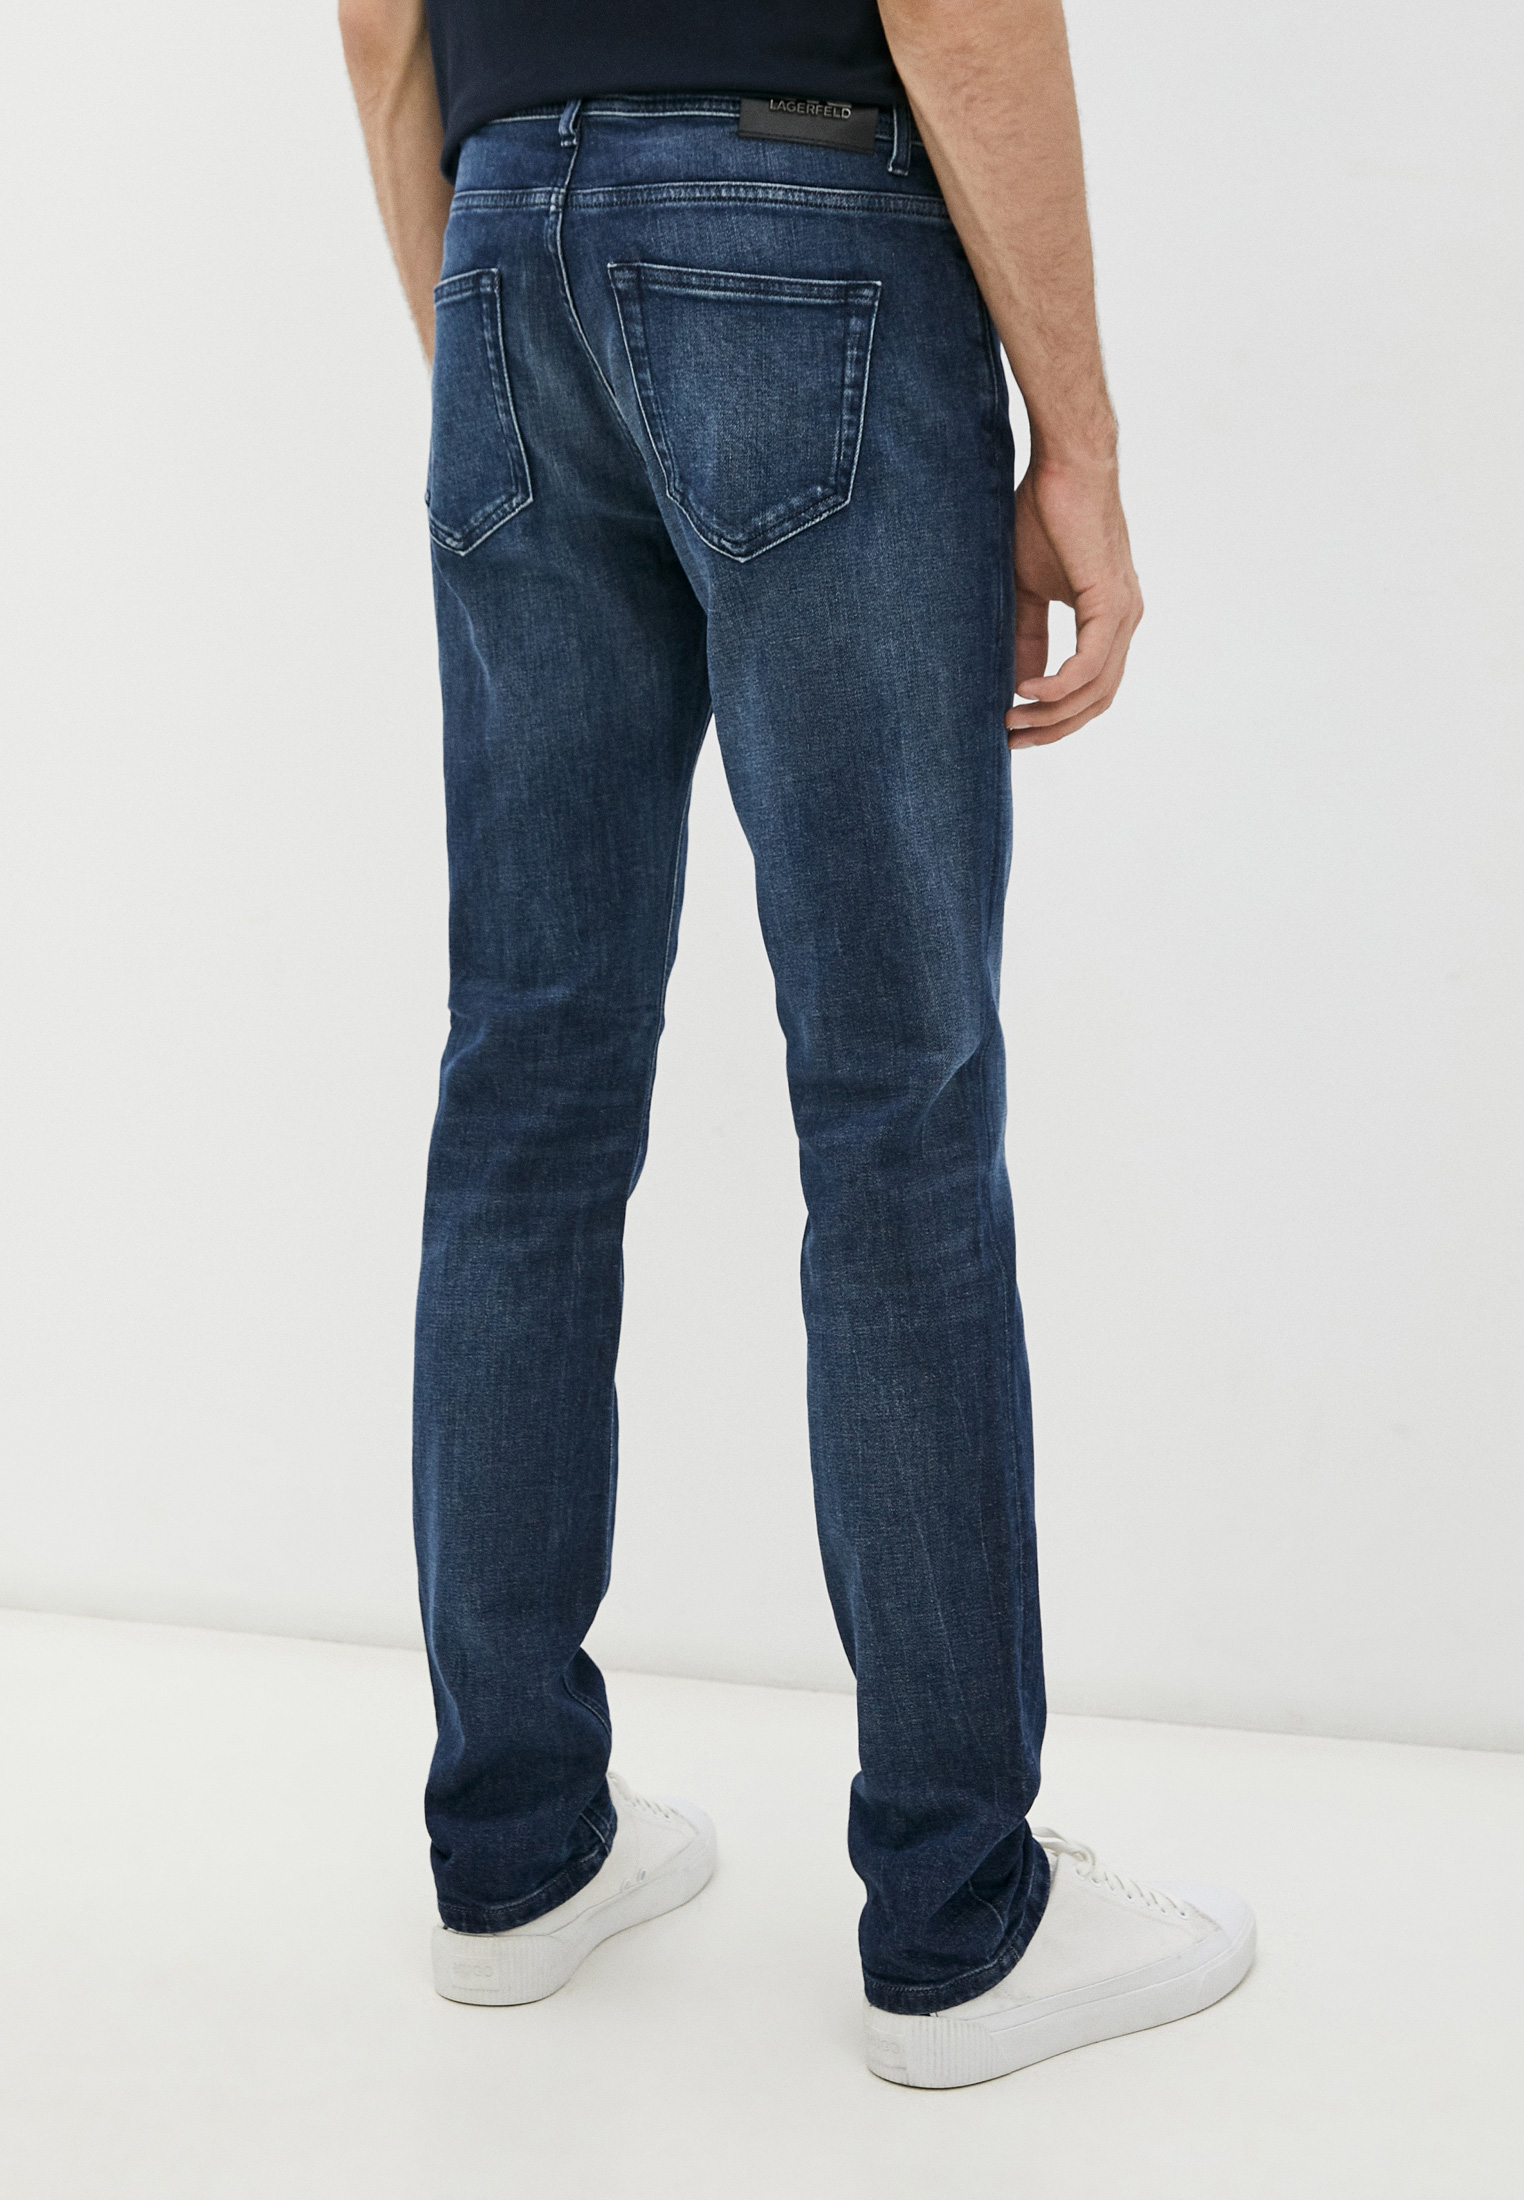 Мужские зауженные джинсы Karl Lagerfeld (Карл Лагерфельд) 500899-265840: изображение 4